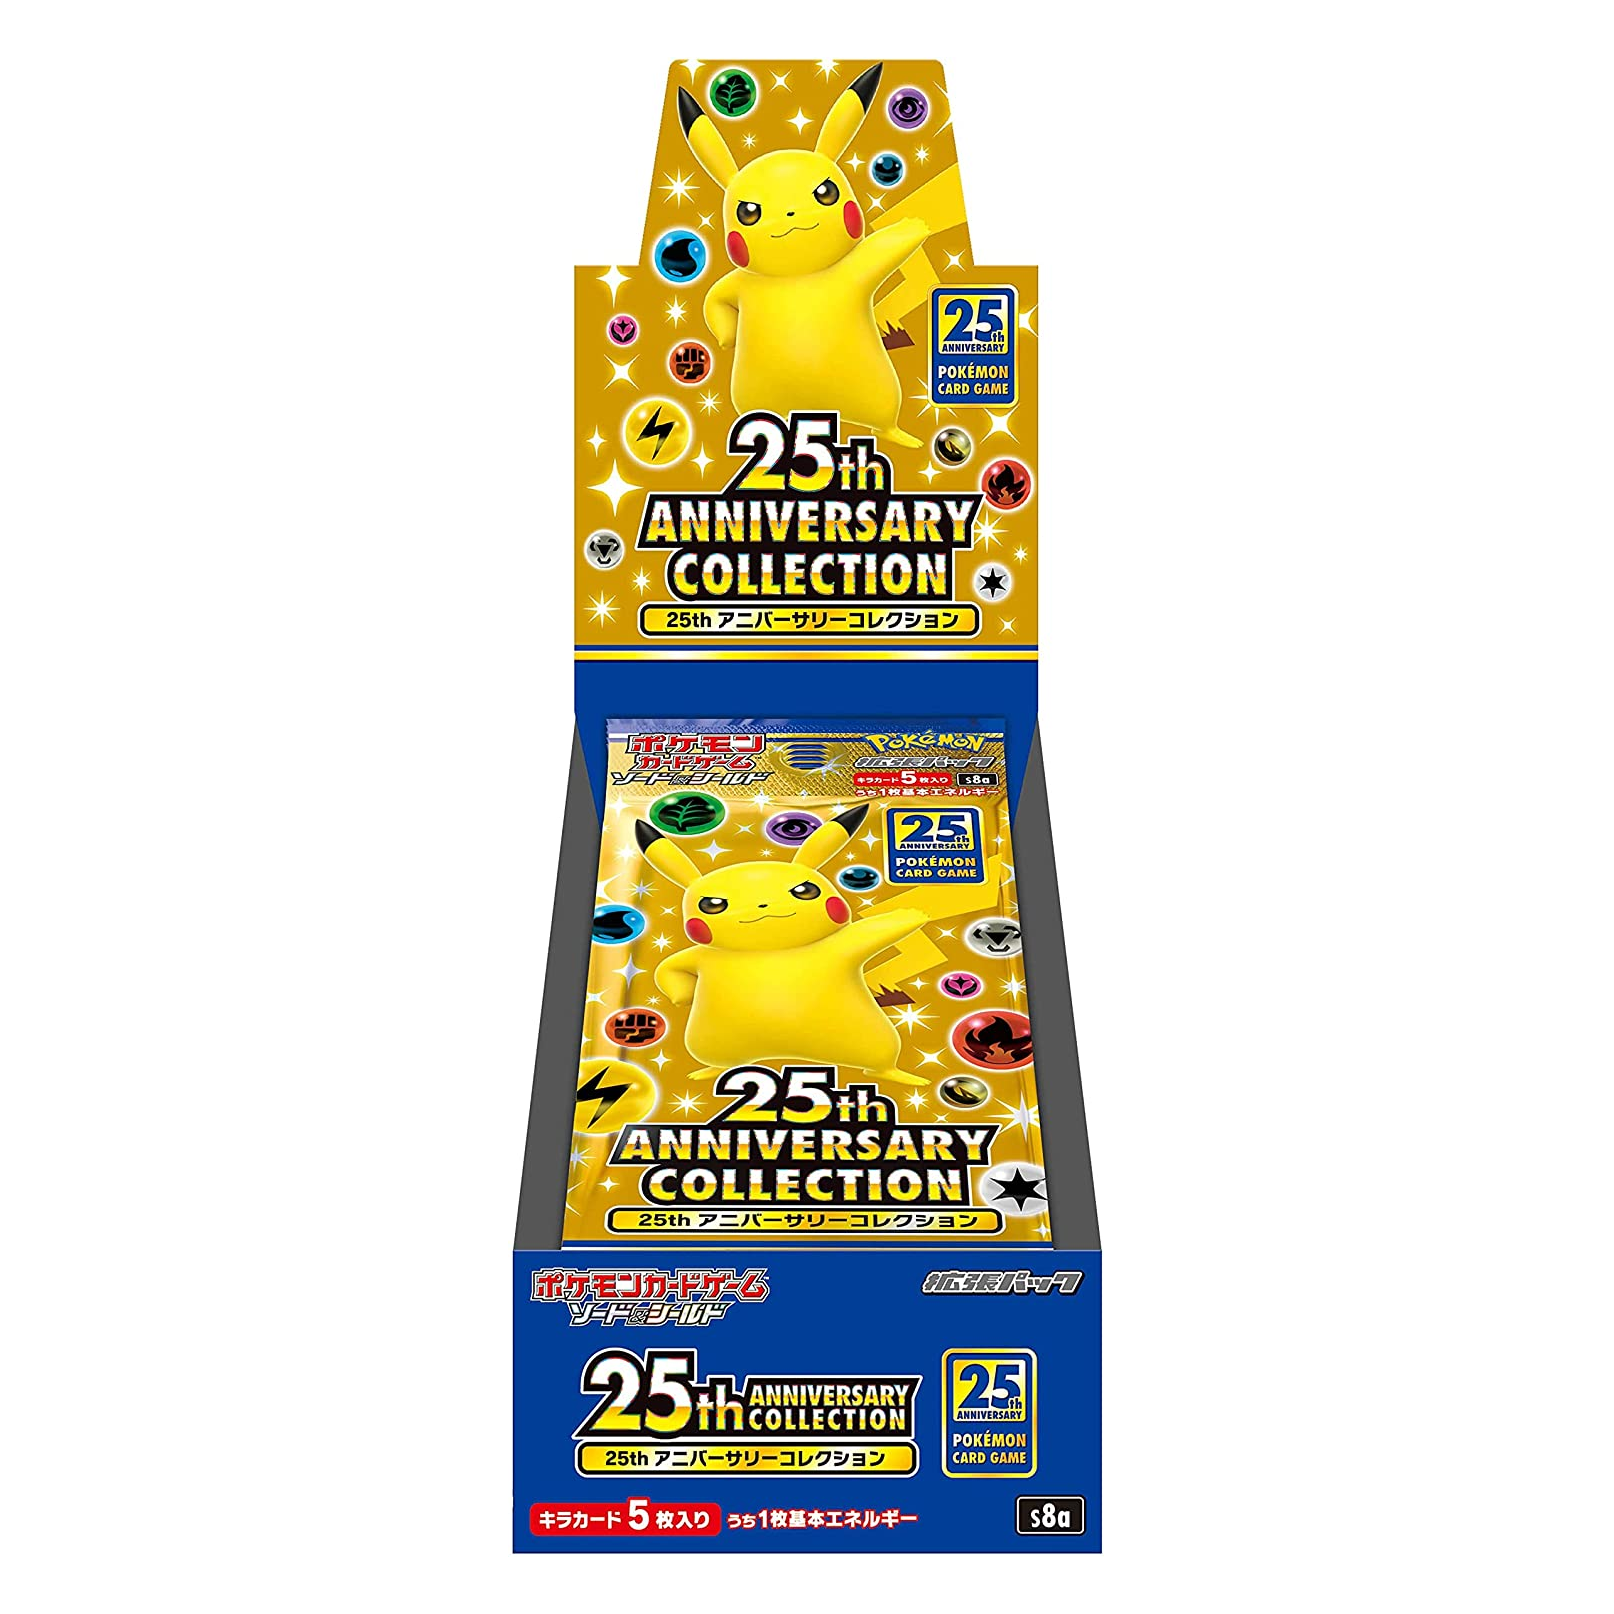 Cartes Pokémon Épée et Bouclier "25th Anniversary Collection" [S8a] (display japonais)--0